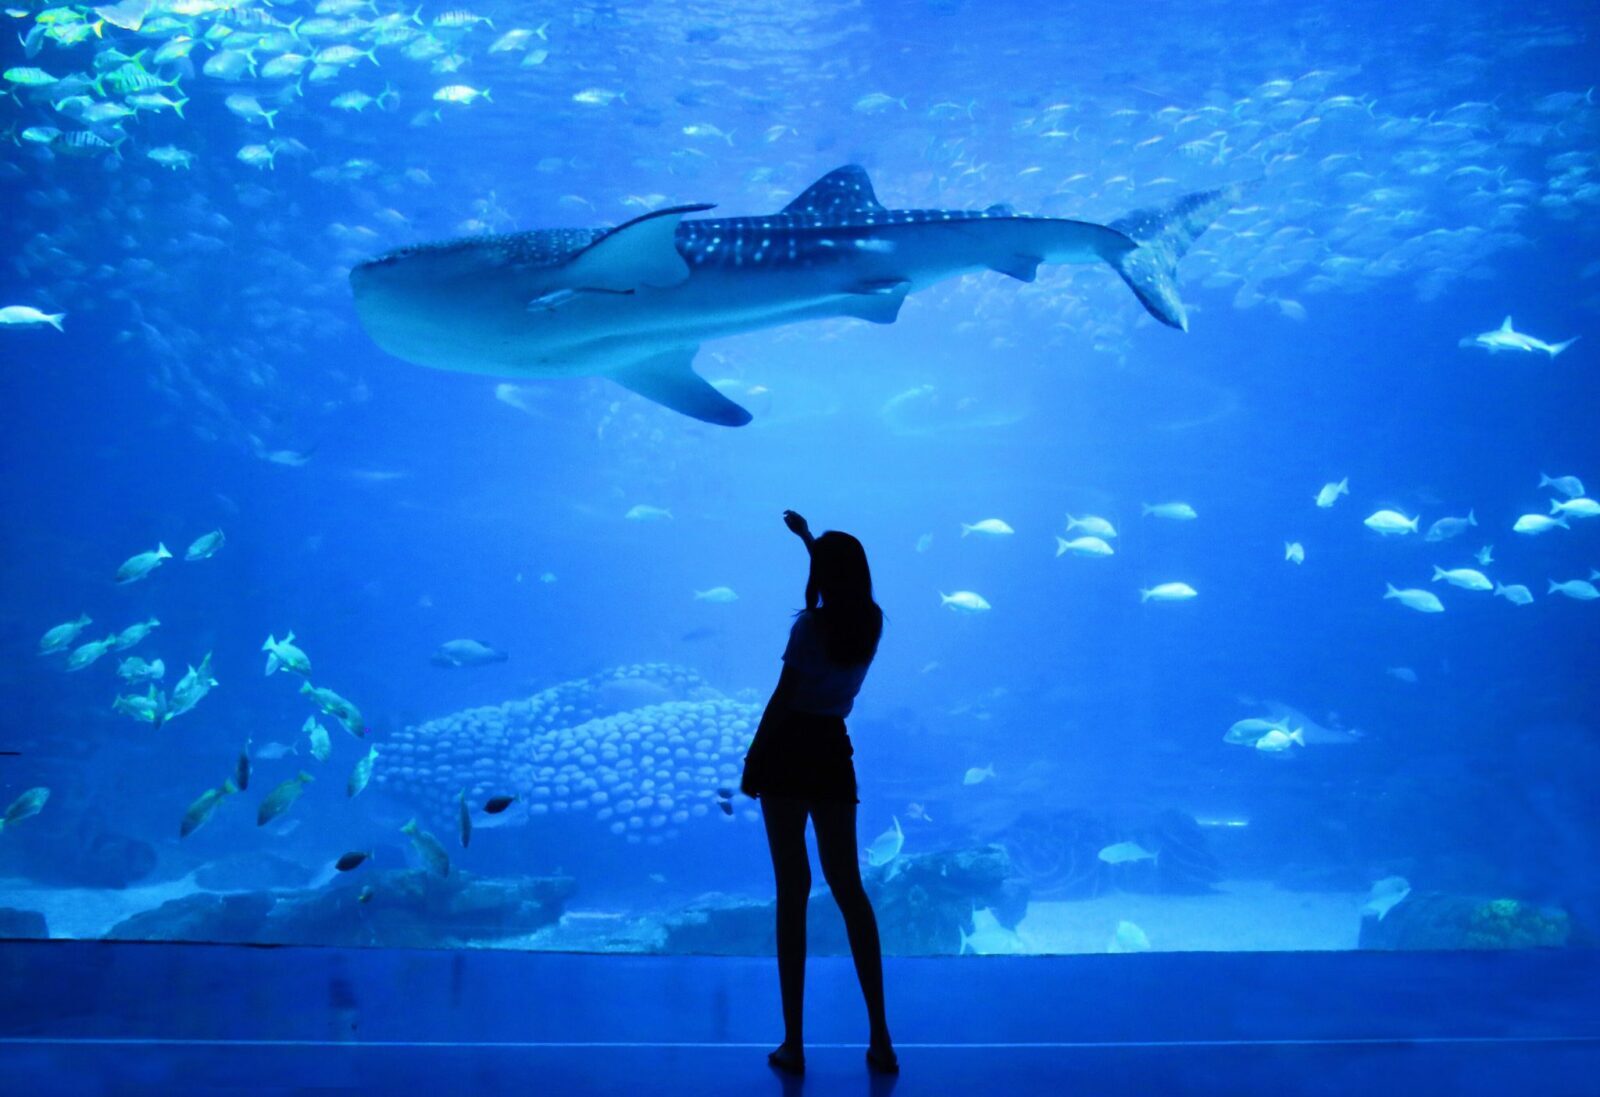 Baltimore aquarium